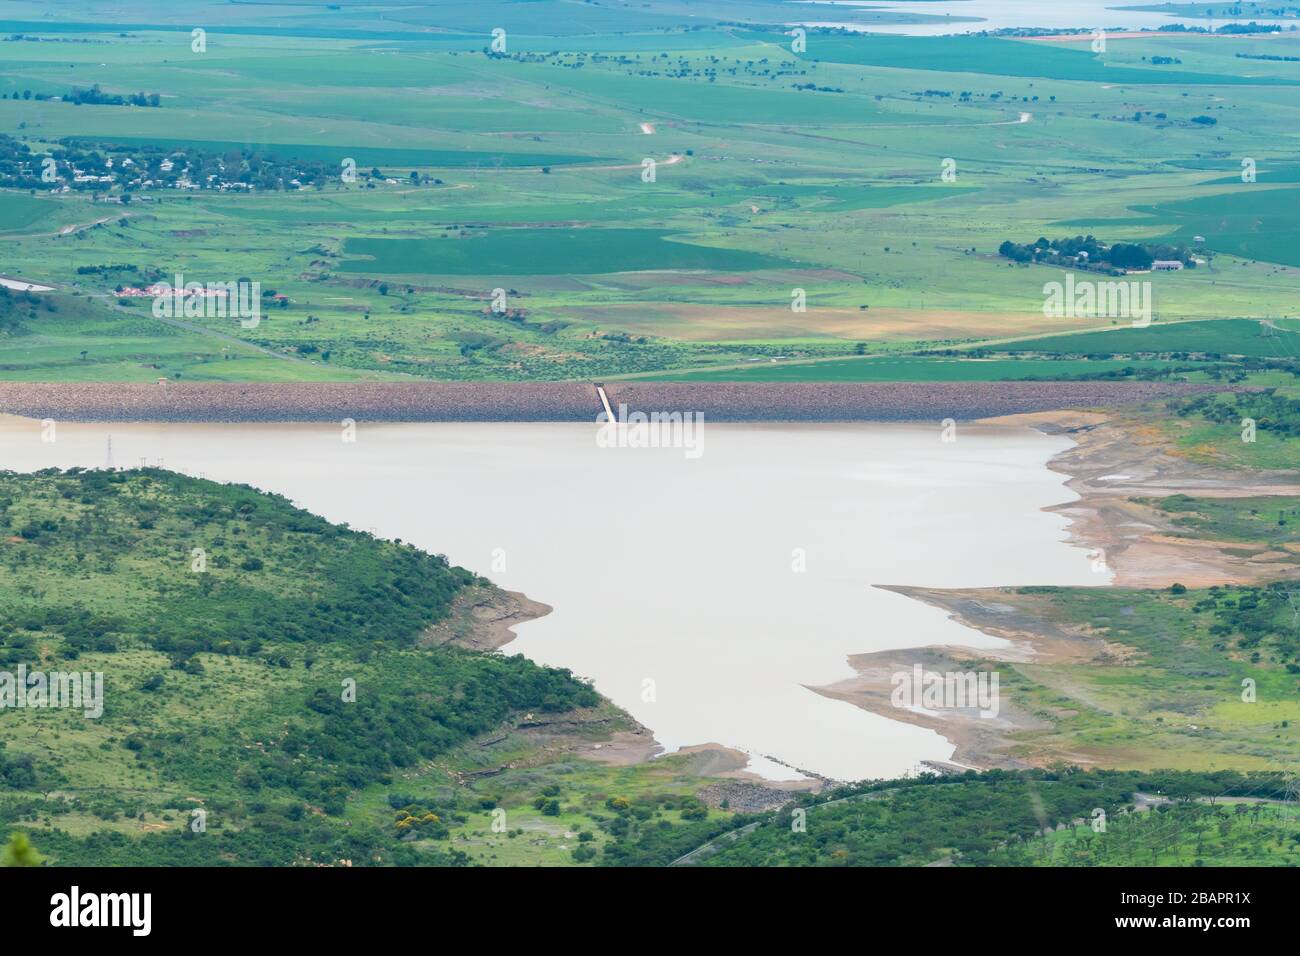 Vista aerea su una grande diga o deposito di acqua a Kwazulu Natal, Sud Africa durante la stagione estiva verde e bagnata che mostra il paesaggio scenico Foto Stock